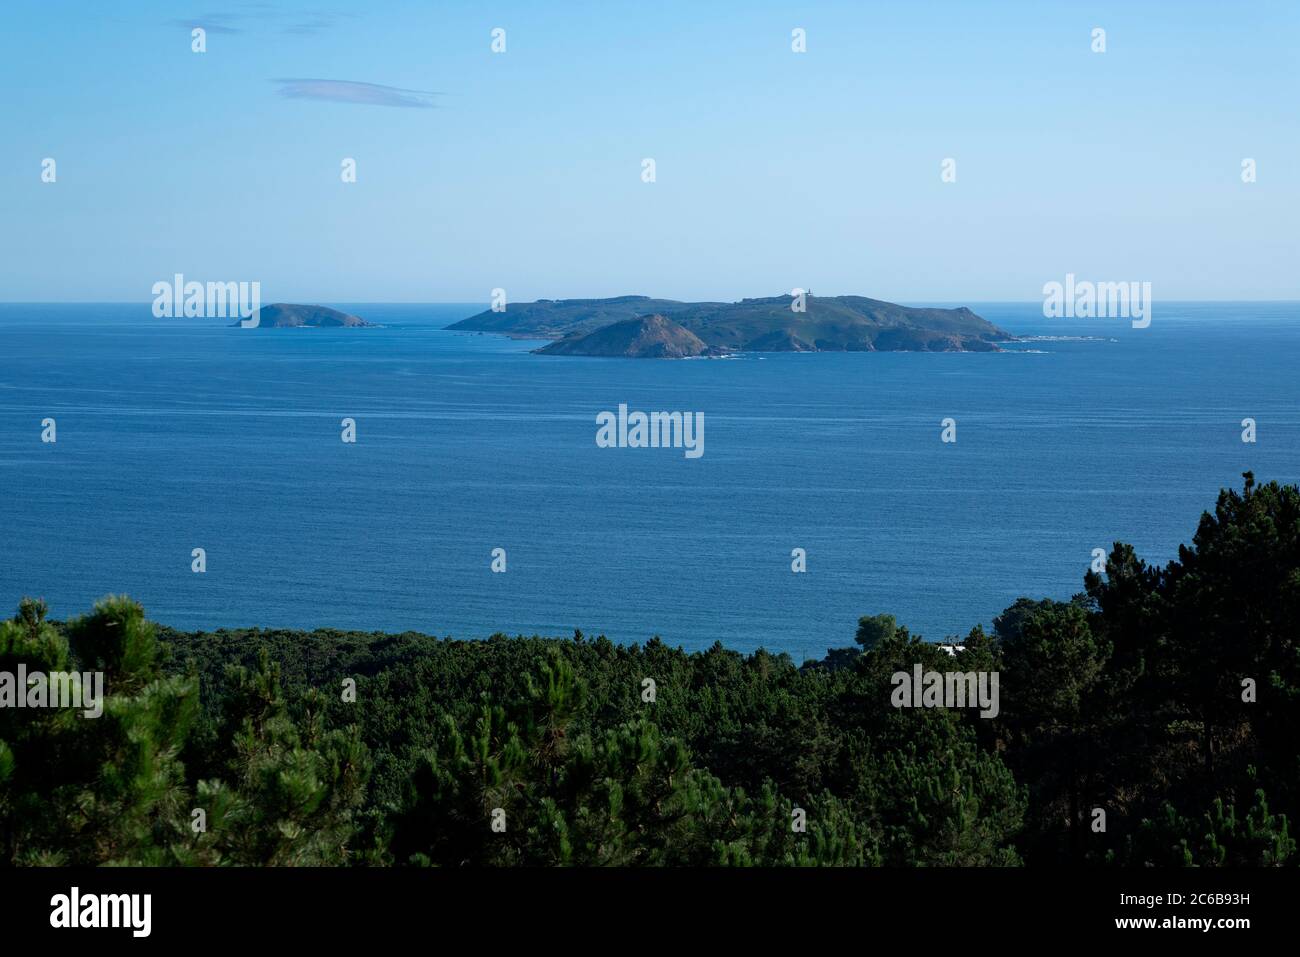 Isla de ont, qui fait partie du Parc national maritime-terrestre des îles Galice de l'Atlantique, Galice, Espagne, Europe Banque D'Images